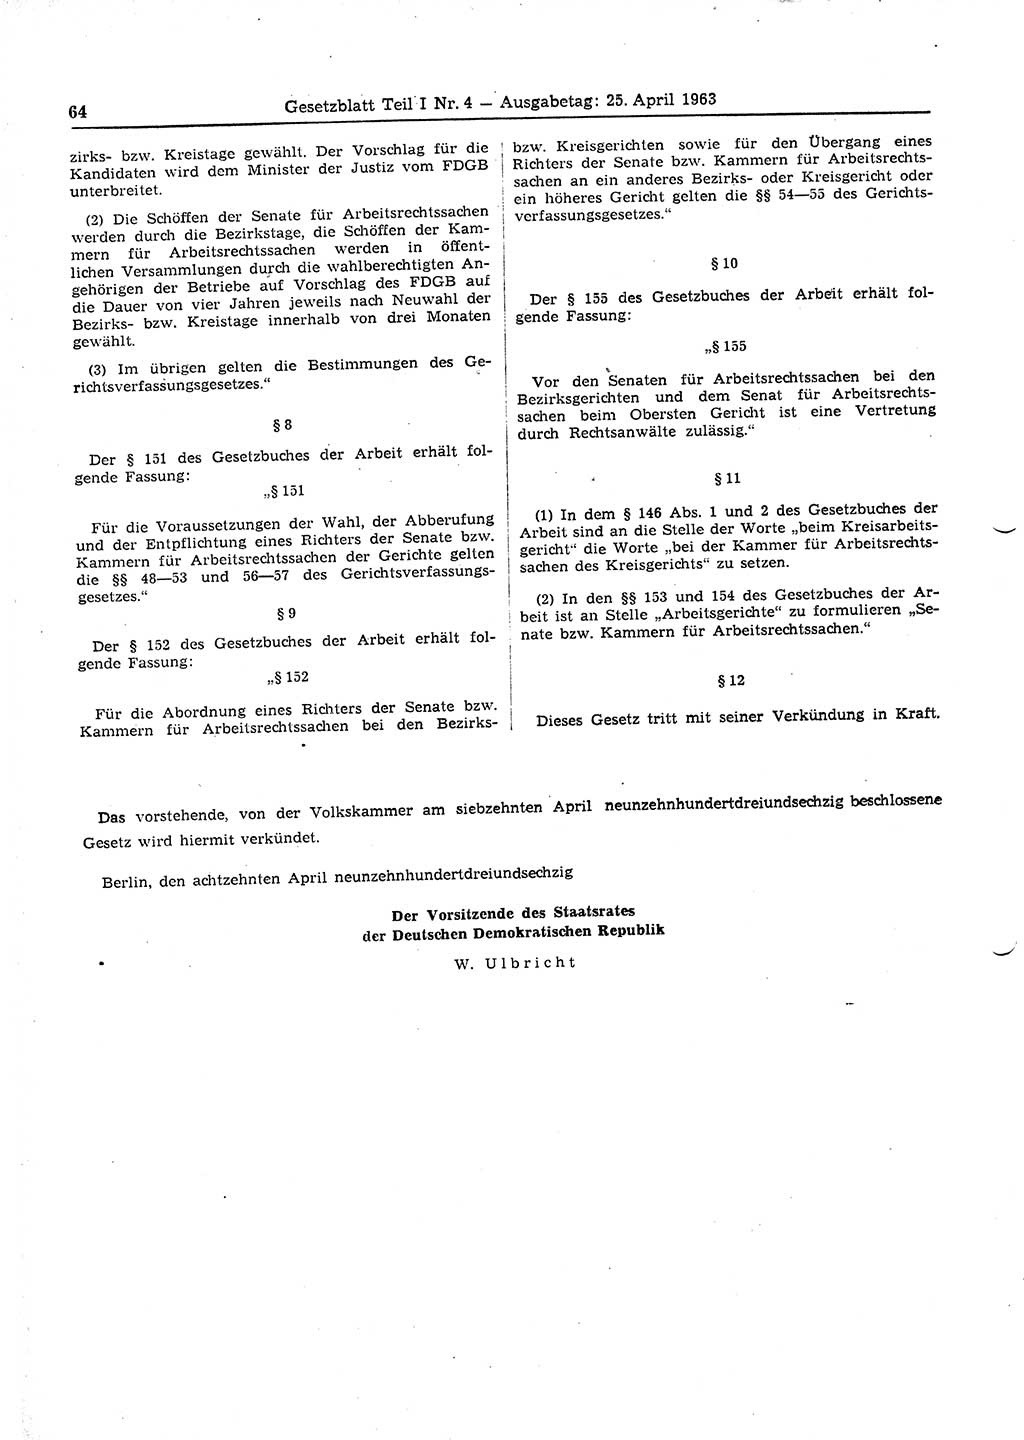 Gesetzblatt (GBl.) der Deutschen Demokratischen Republik (DDR) Teil Ⅰ 1963, Seite 64 (GBl. DDR Ⅰ 1963, S. 64)